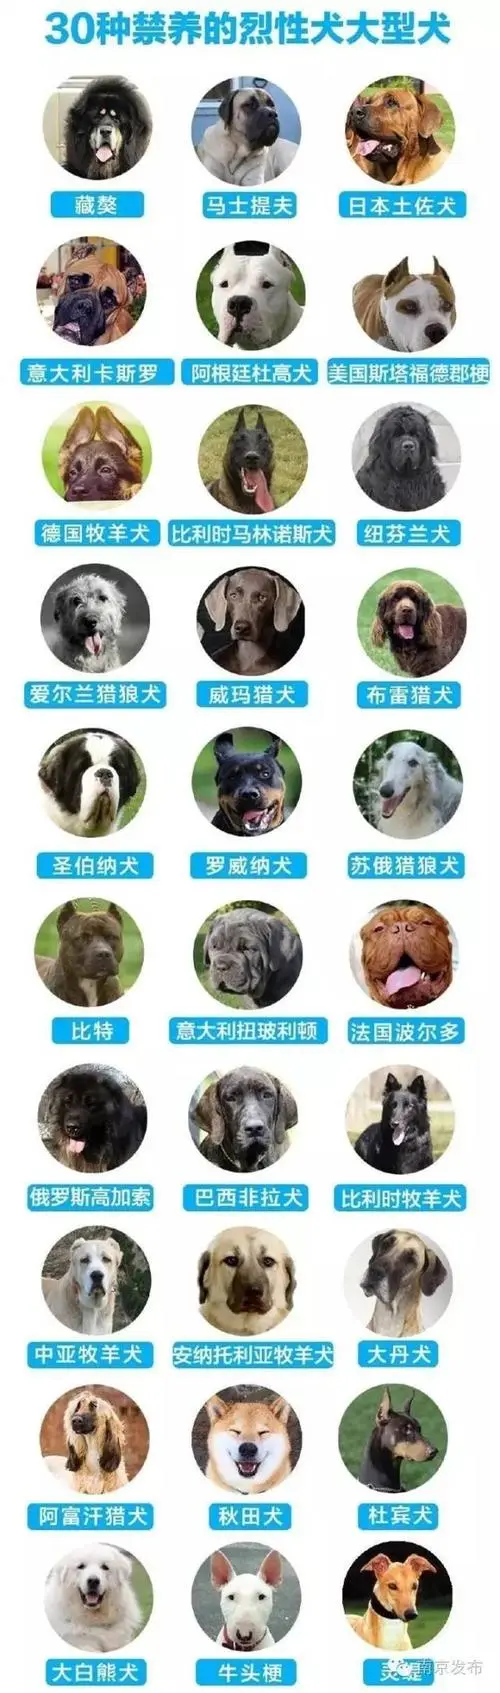 城市禁养犬种名单 城市禁养犬种名单图片